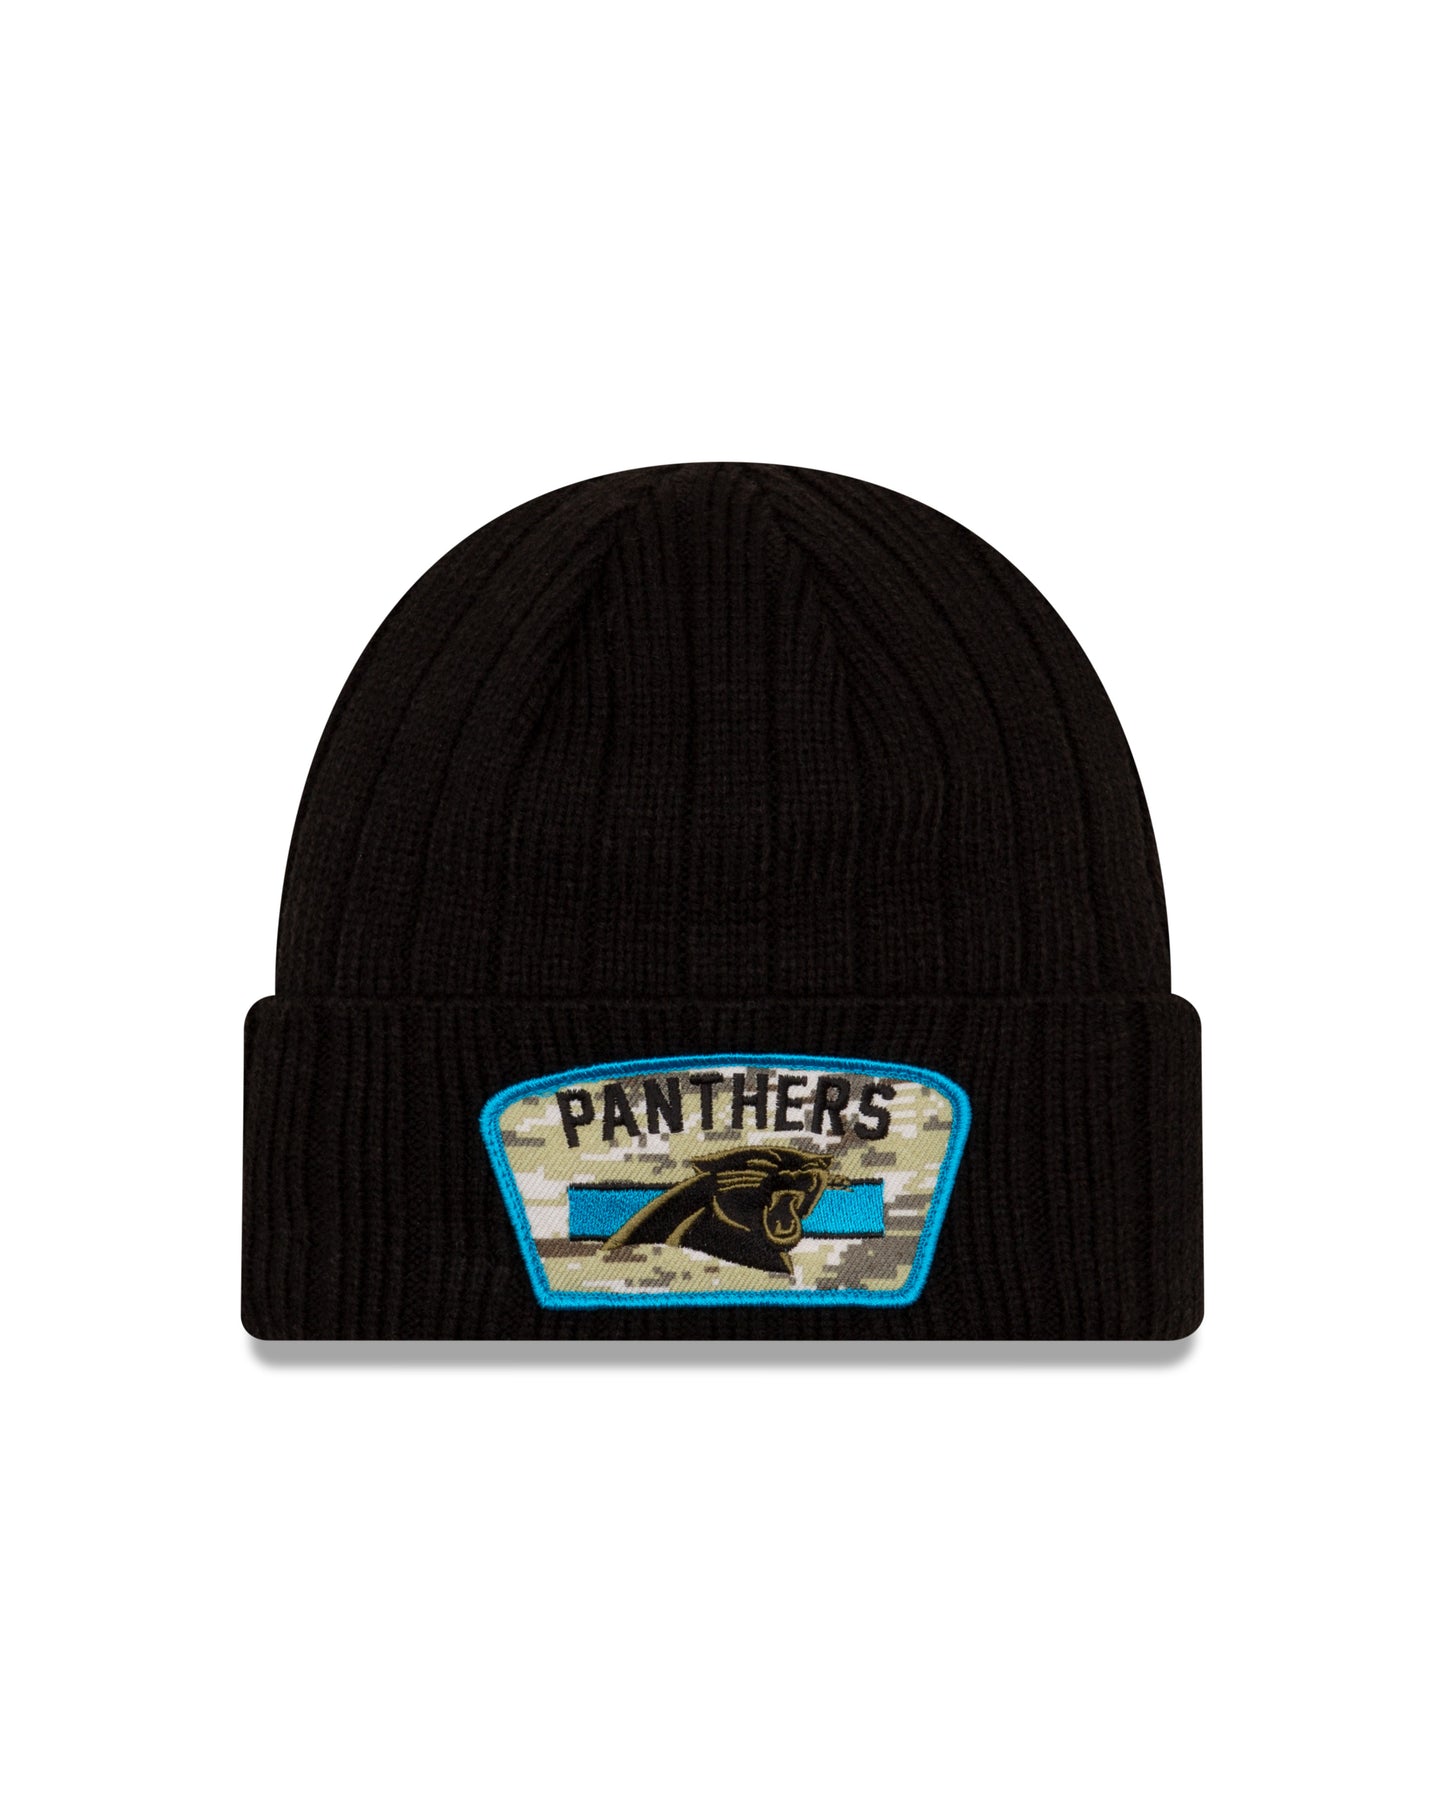 Carolina Panthers 2021 Sideline Salute to Service Knit Hat - Black